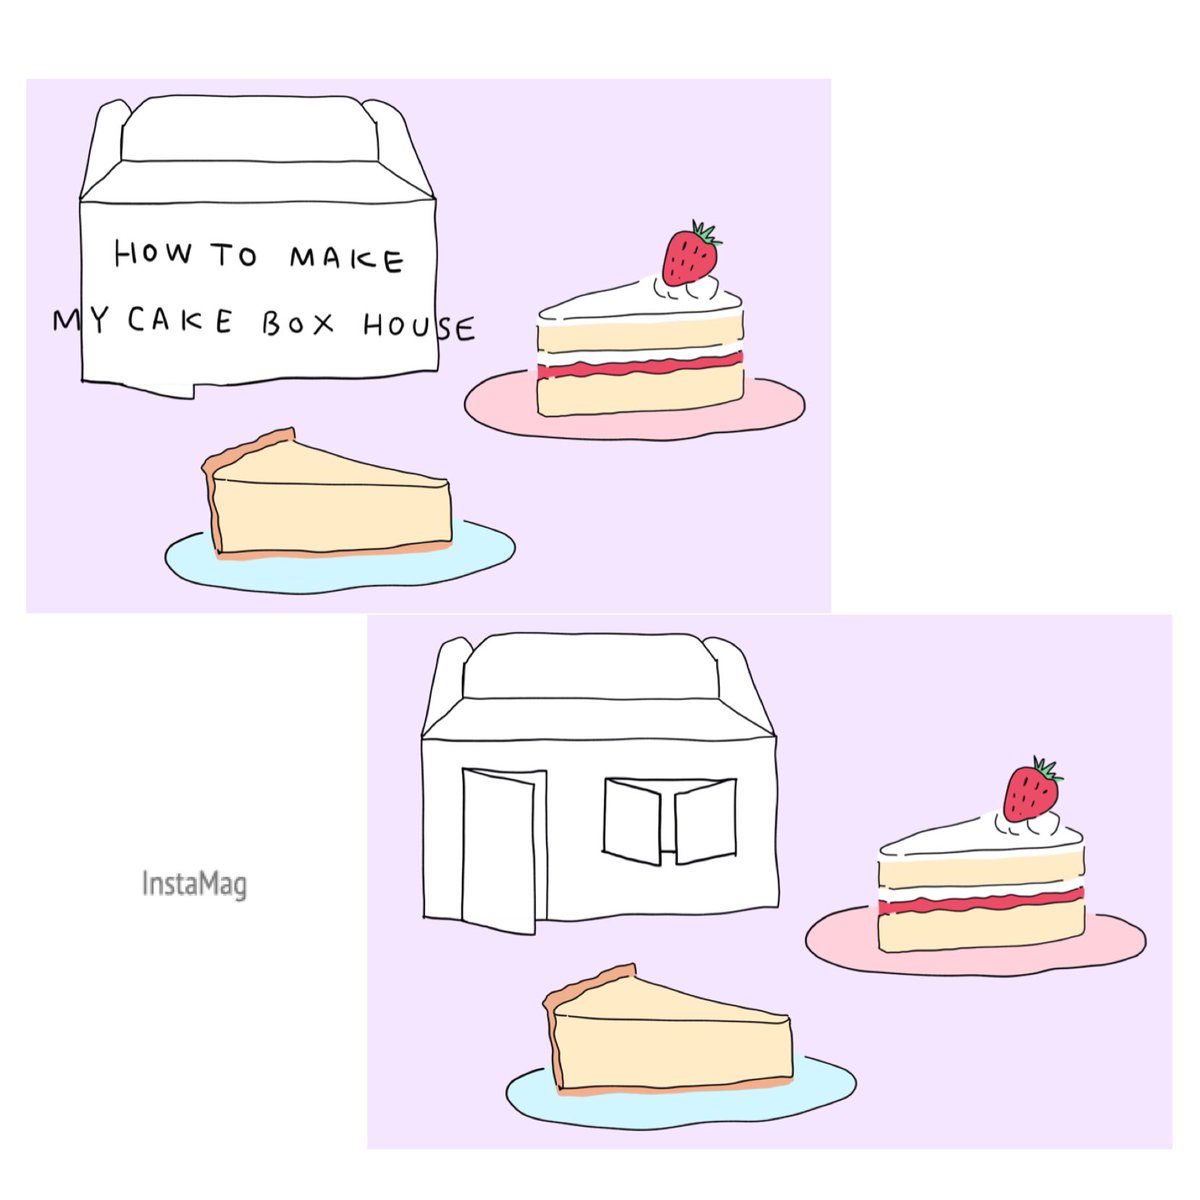 ケーキ箱で作るおうち。
作り方にルールはなくて思いつくままでいいのですが、雑な作り方を描いてみました。

定規で線を丁寧に描いてもいいけど、いきなりマジックで
ガシガシ描くほうが味が出るかも。

少しでも楽しくなればいいな。

#ひきこもり生活 
#ケーキ箱で作るおうち
#sayako_illustration 